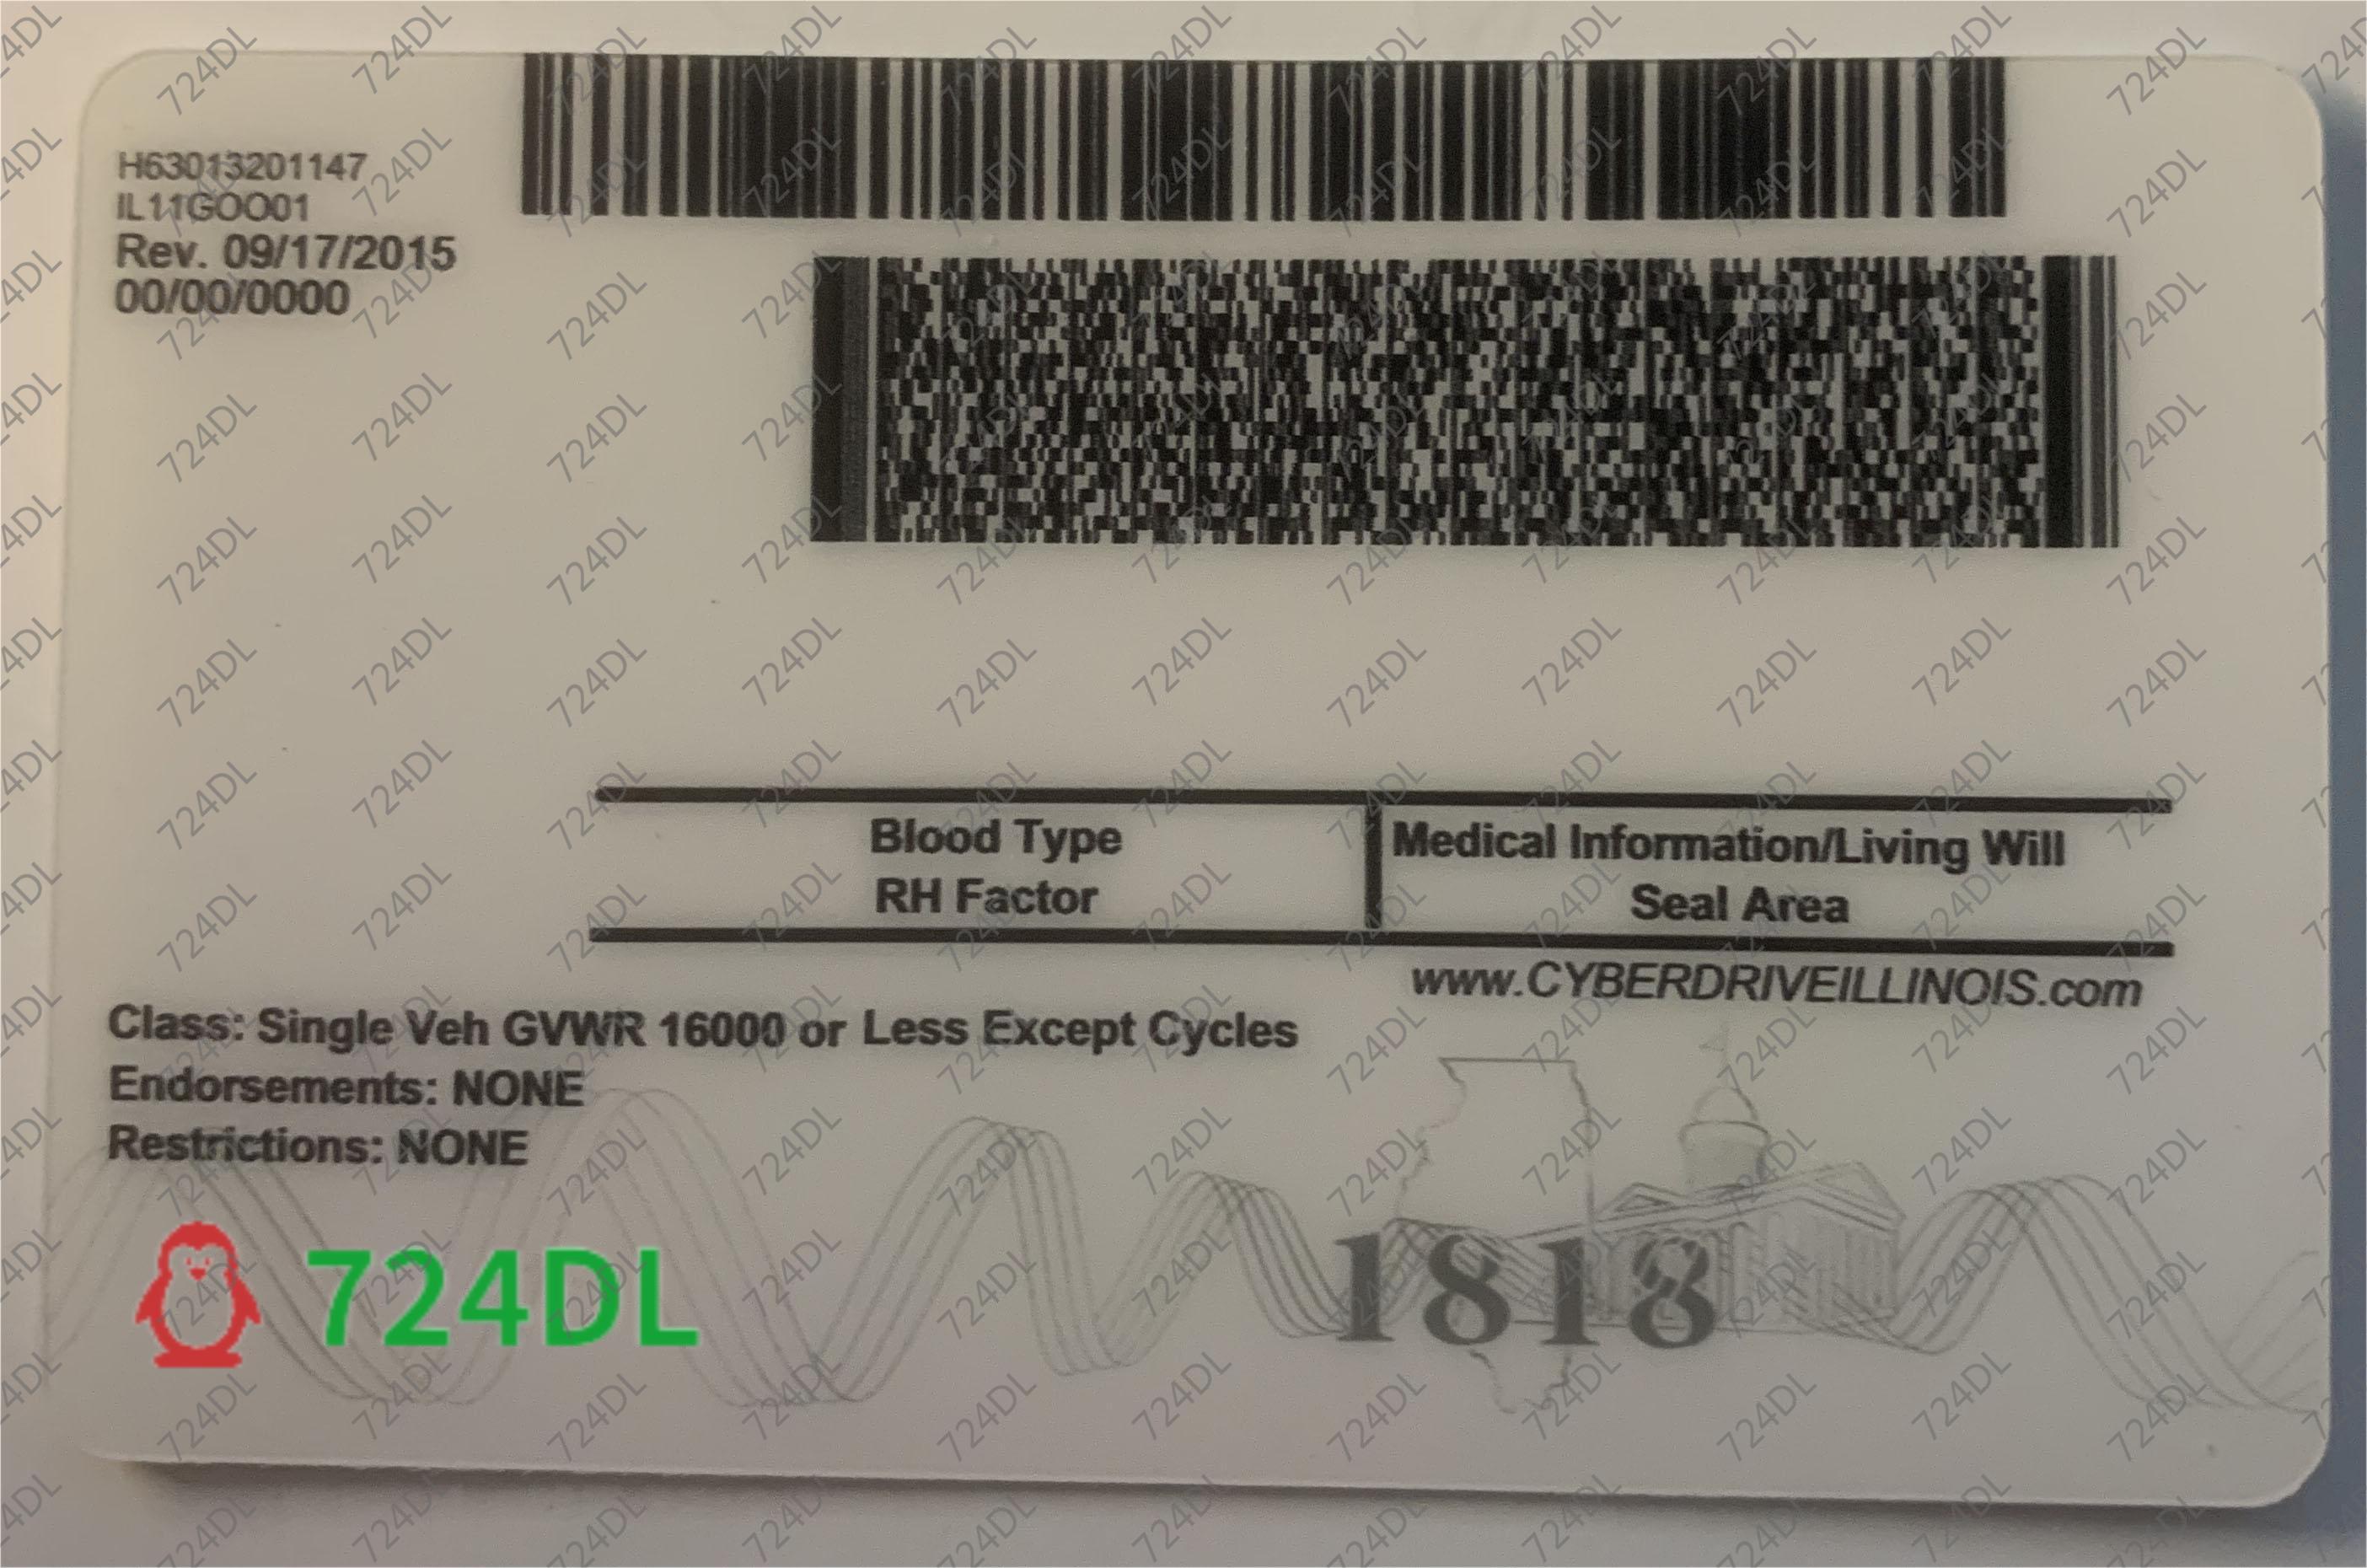 Illinois State ID, Fake UT ID